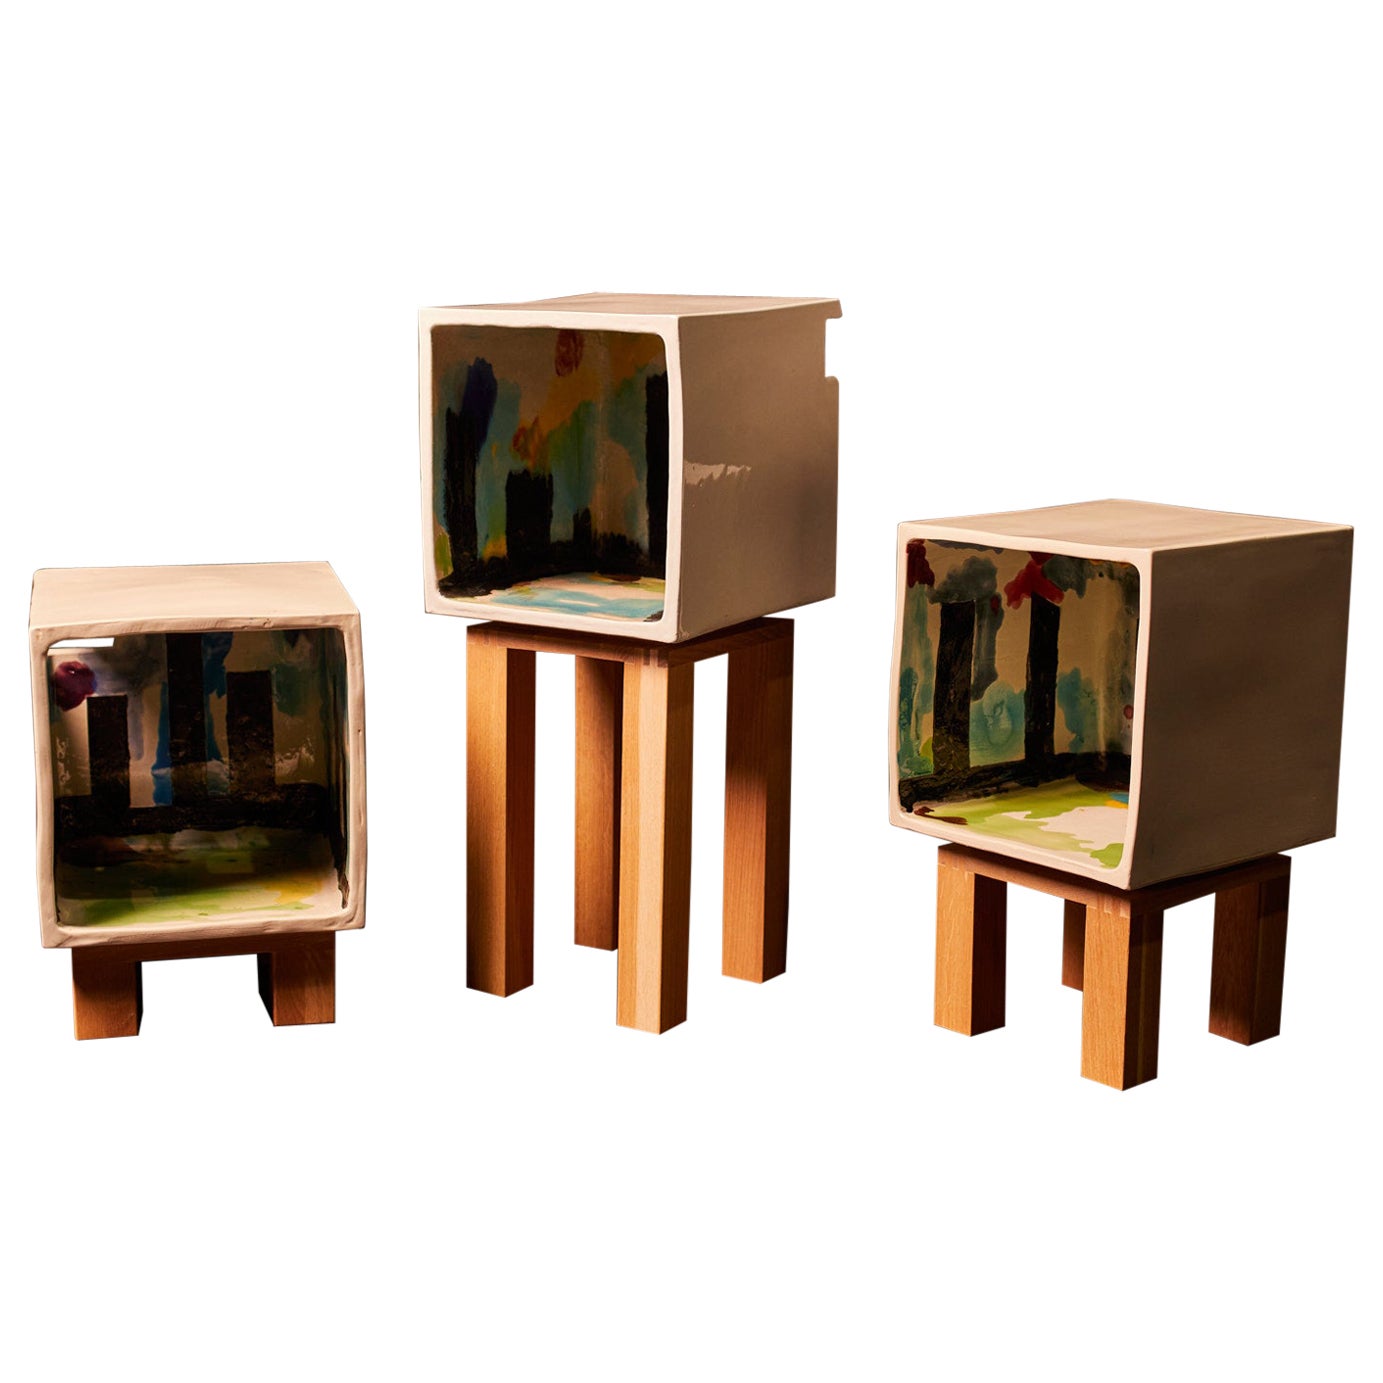 Inquadrato Series of Cabinets Designed by Ennio Nonni for Fragiledizioni, 2022 For Sale